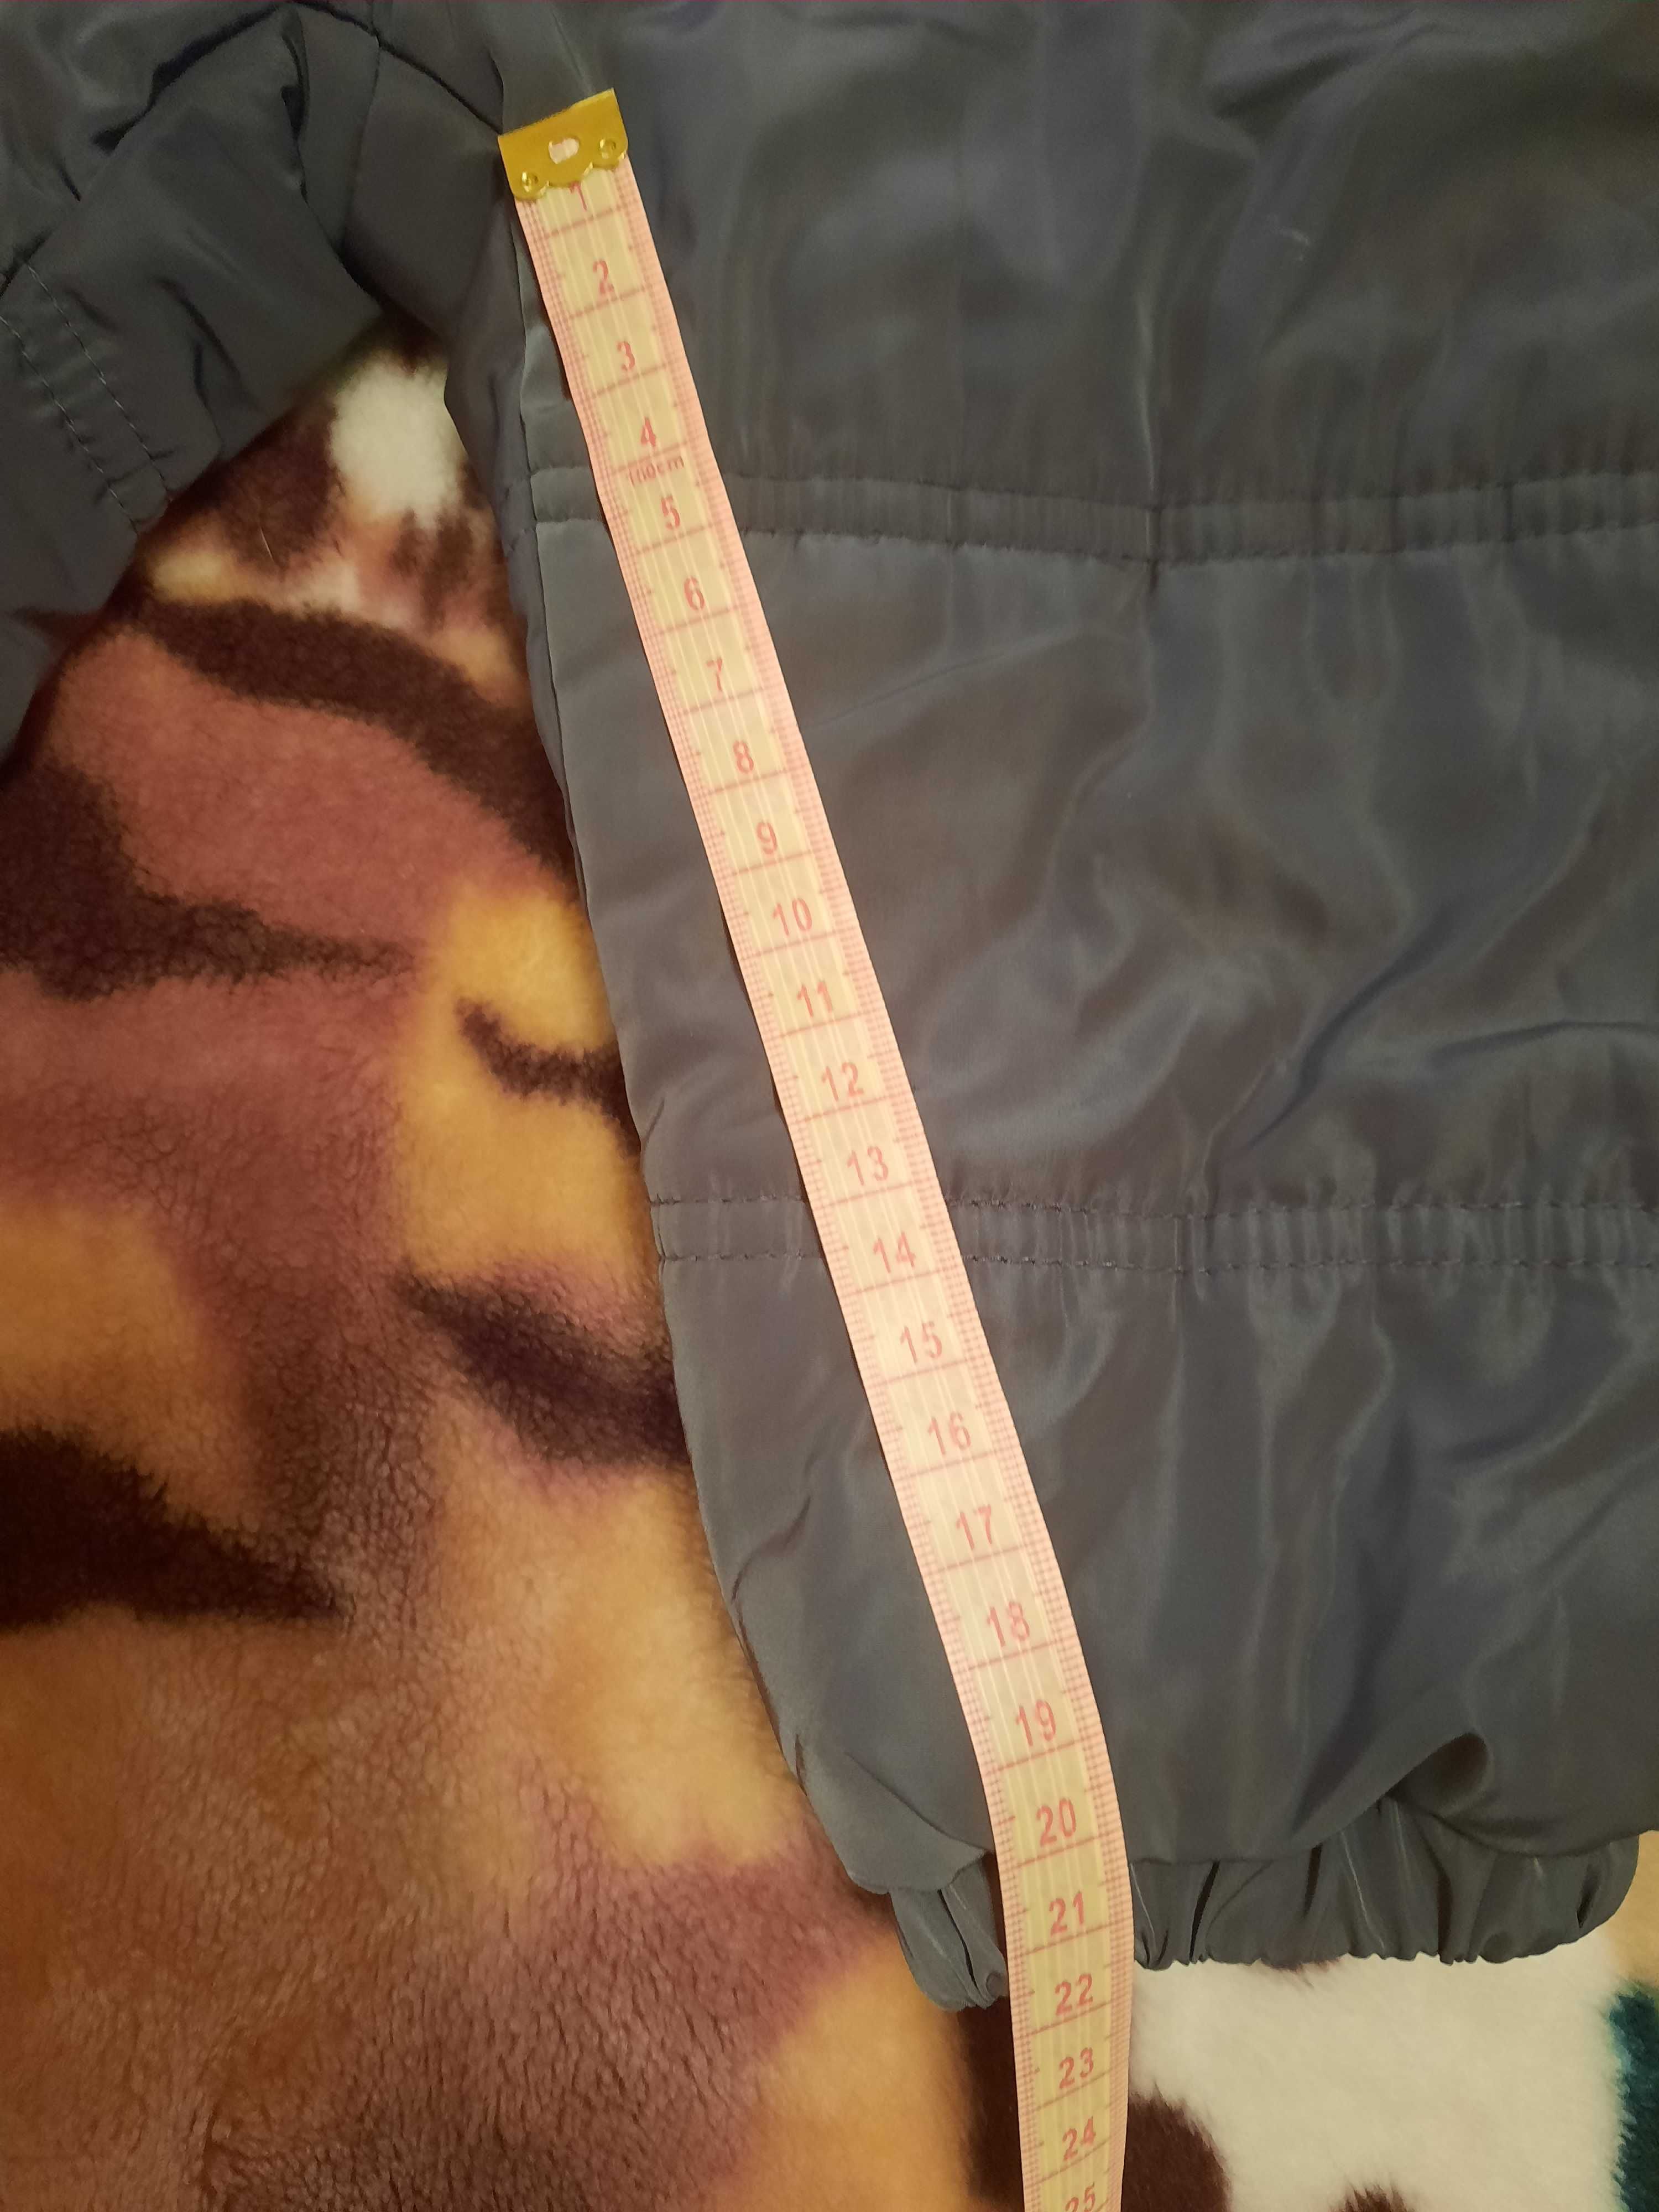 Дитячий зимовий комплект (куртка та напівкомбінезон) 86 розміру